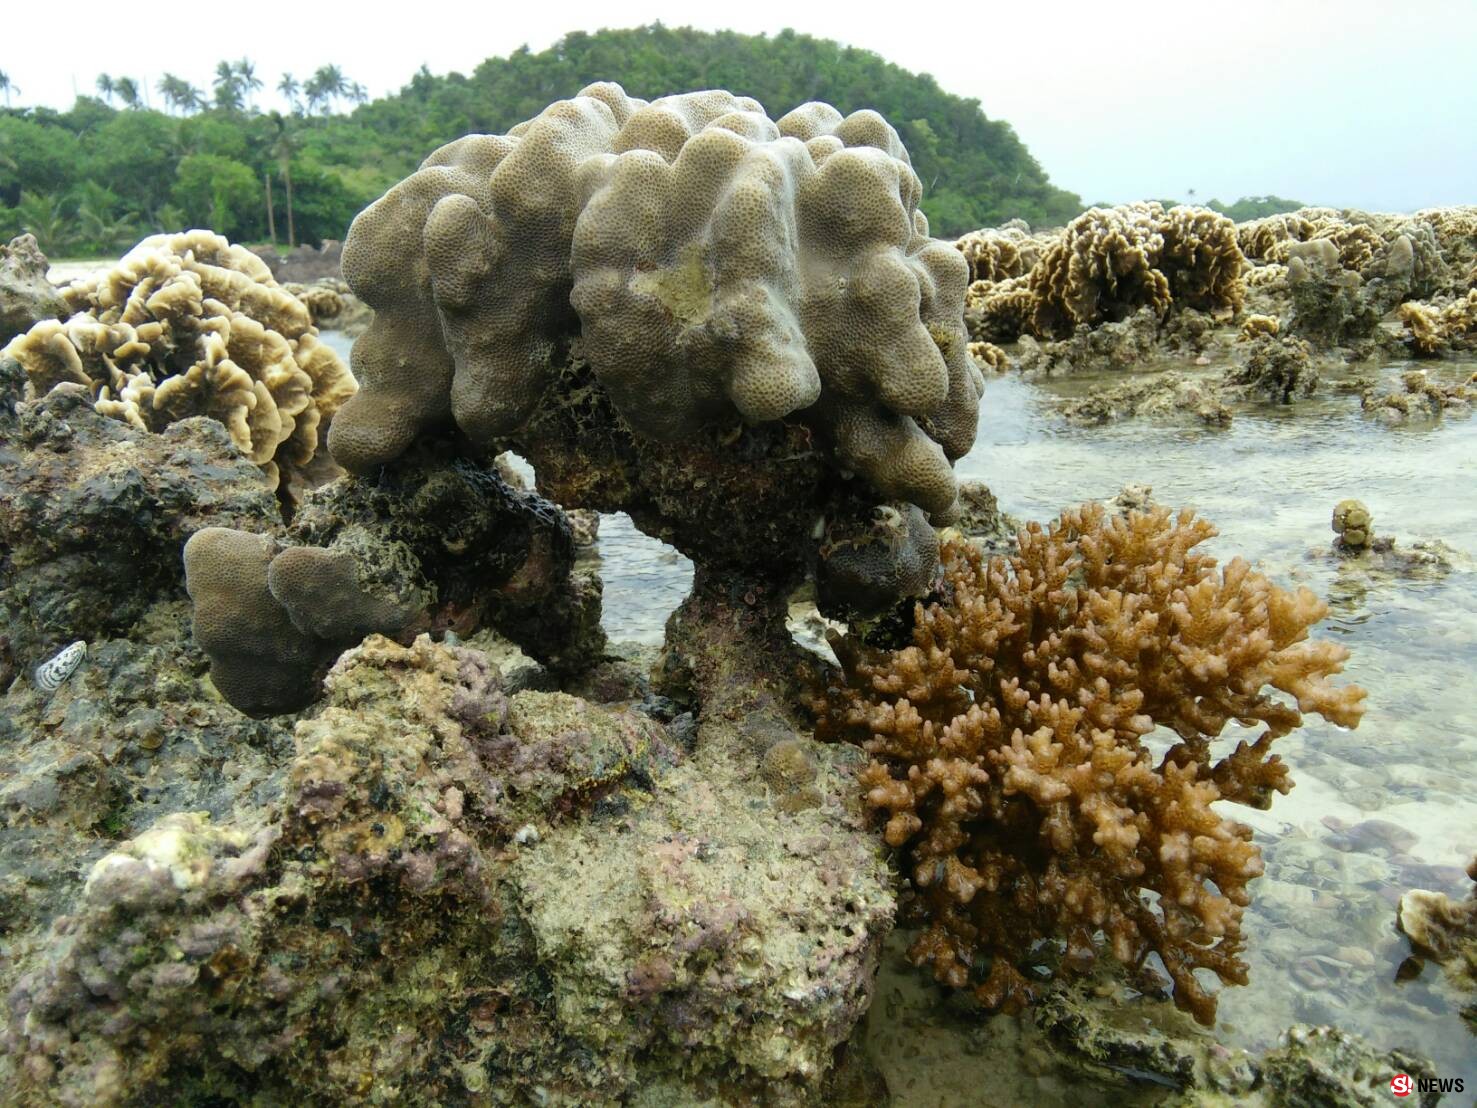 แปลก เกิดปรากฏการณ์น้ำทะเลลงต่ำ จนก้อนปะการังโผล่พ้นน้ำทะเลที่เกาะทะลุ